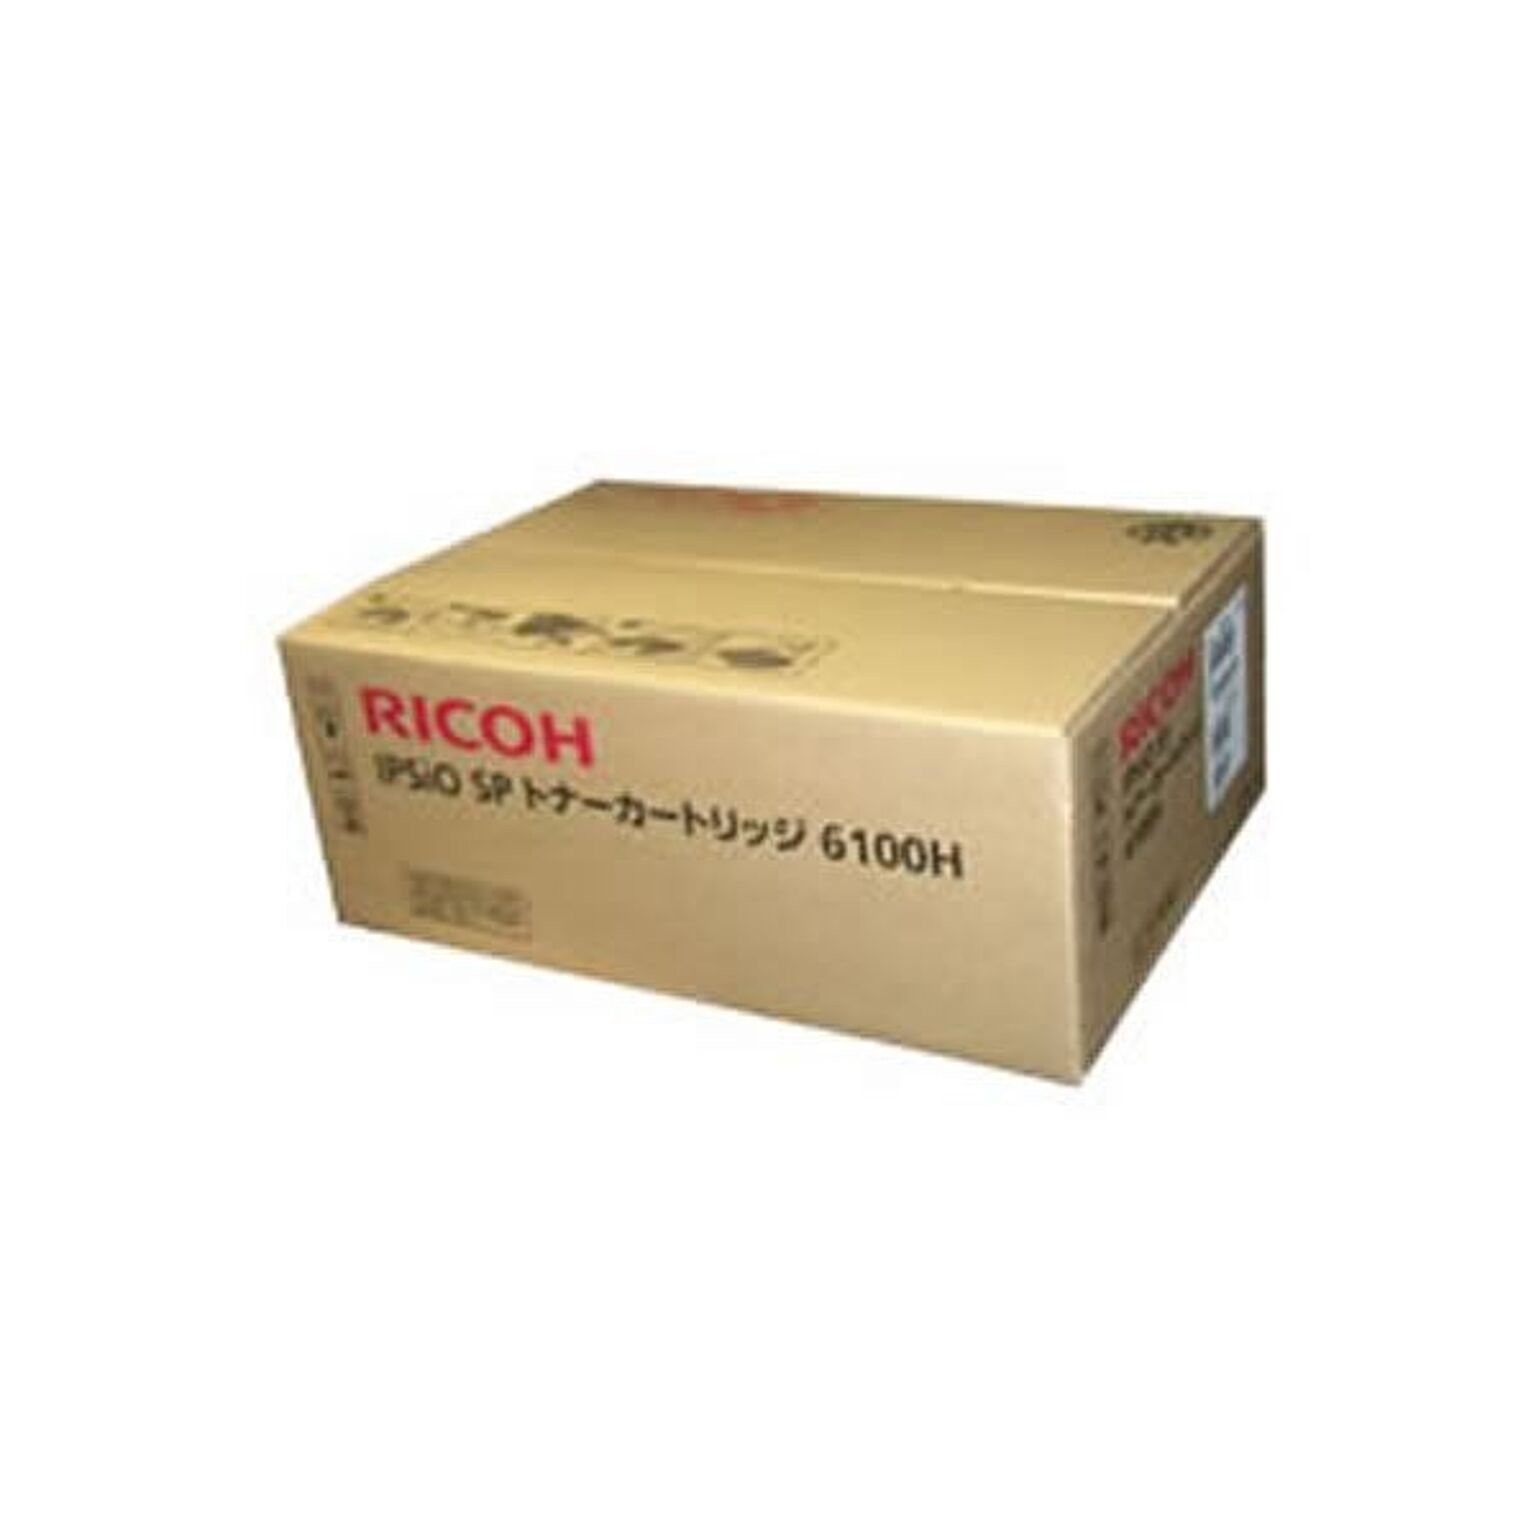 純正品 RICOH リコー トナーカートリッジ イプシオ SPトナー6100H 通販 RoomClipショッピング